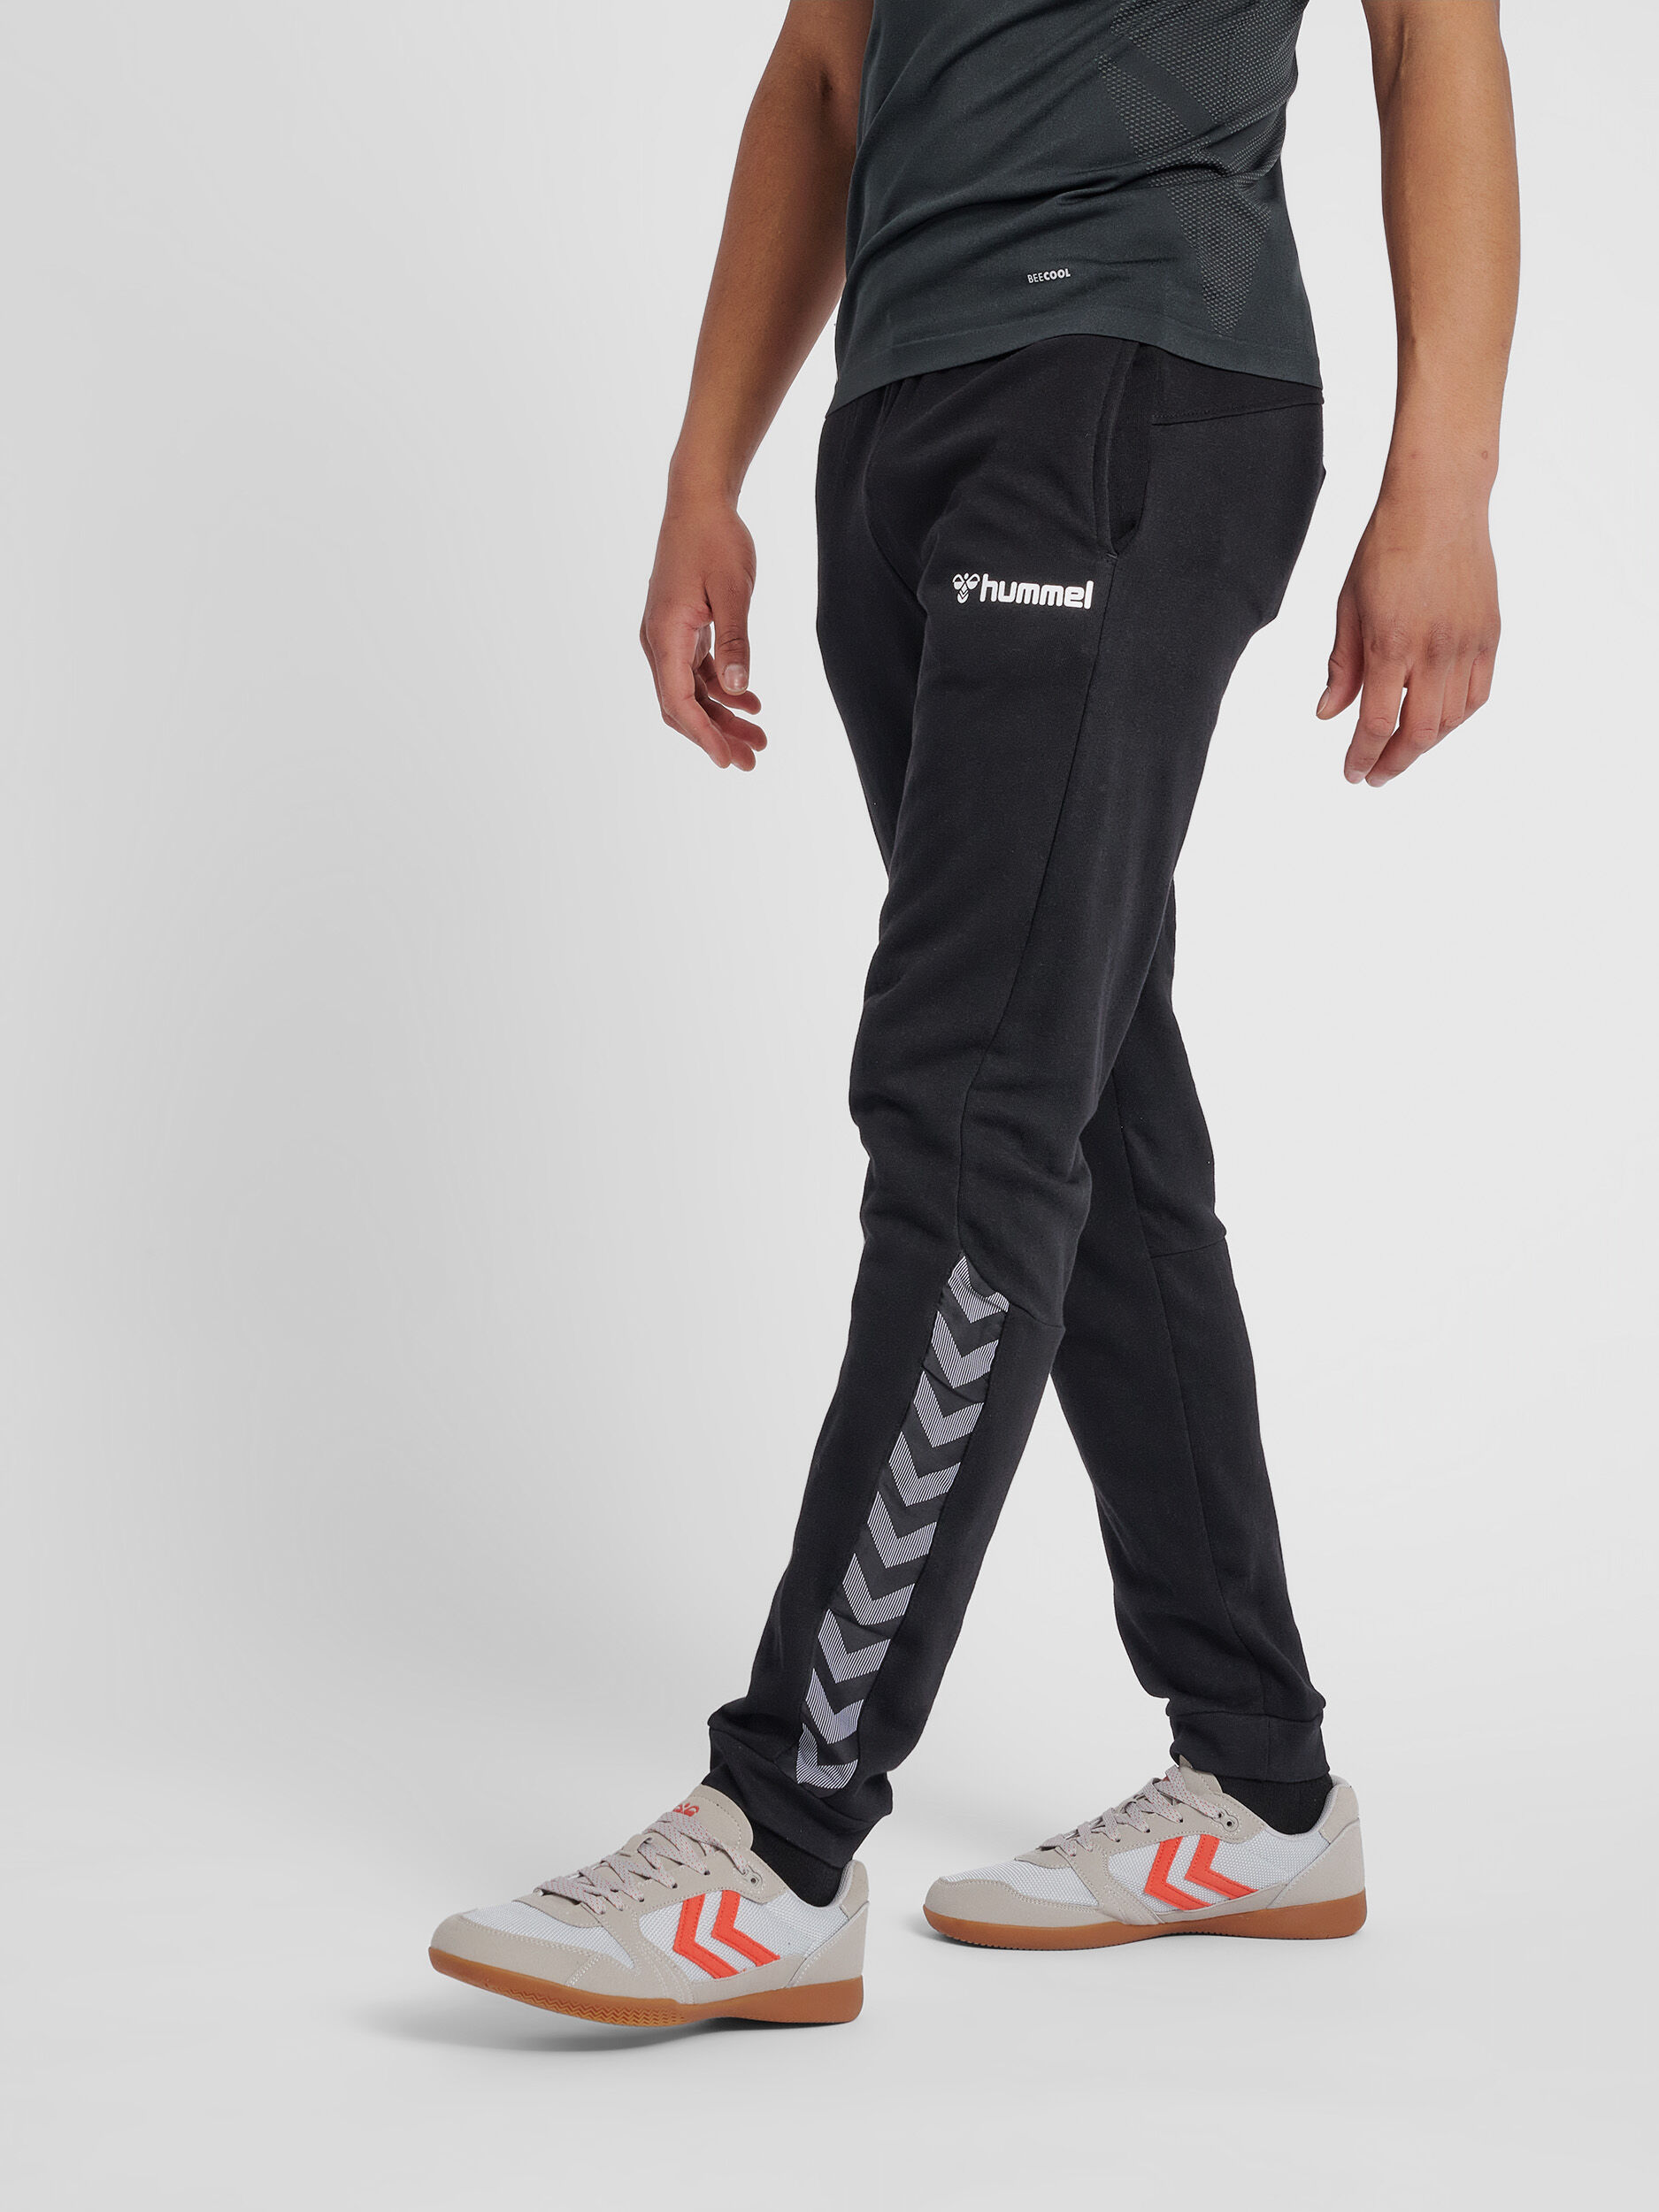 Details about   Hummel Mens Sport Training Pants Trousers Tracksuit Bottoms Ankle Zip Sweatpants 